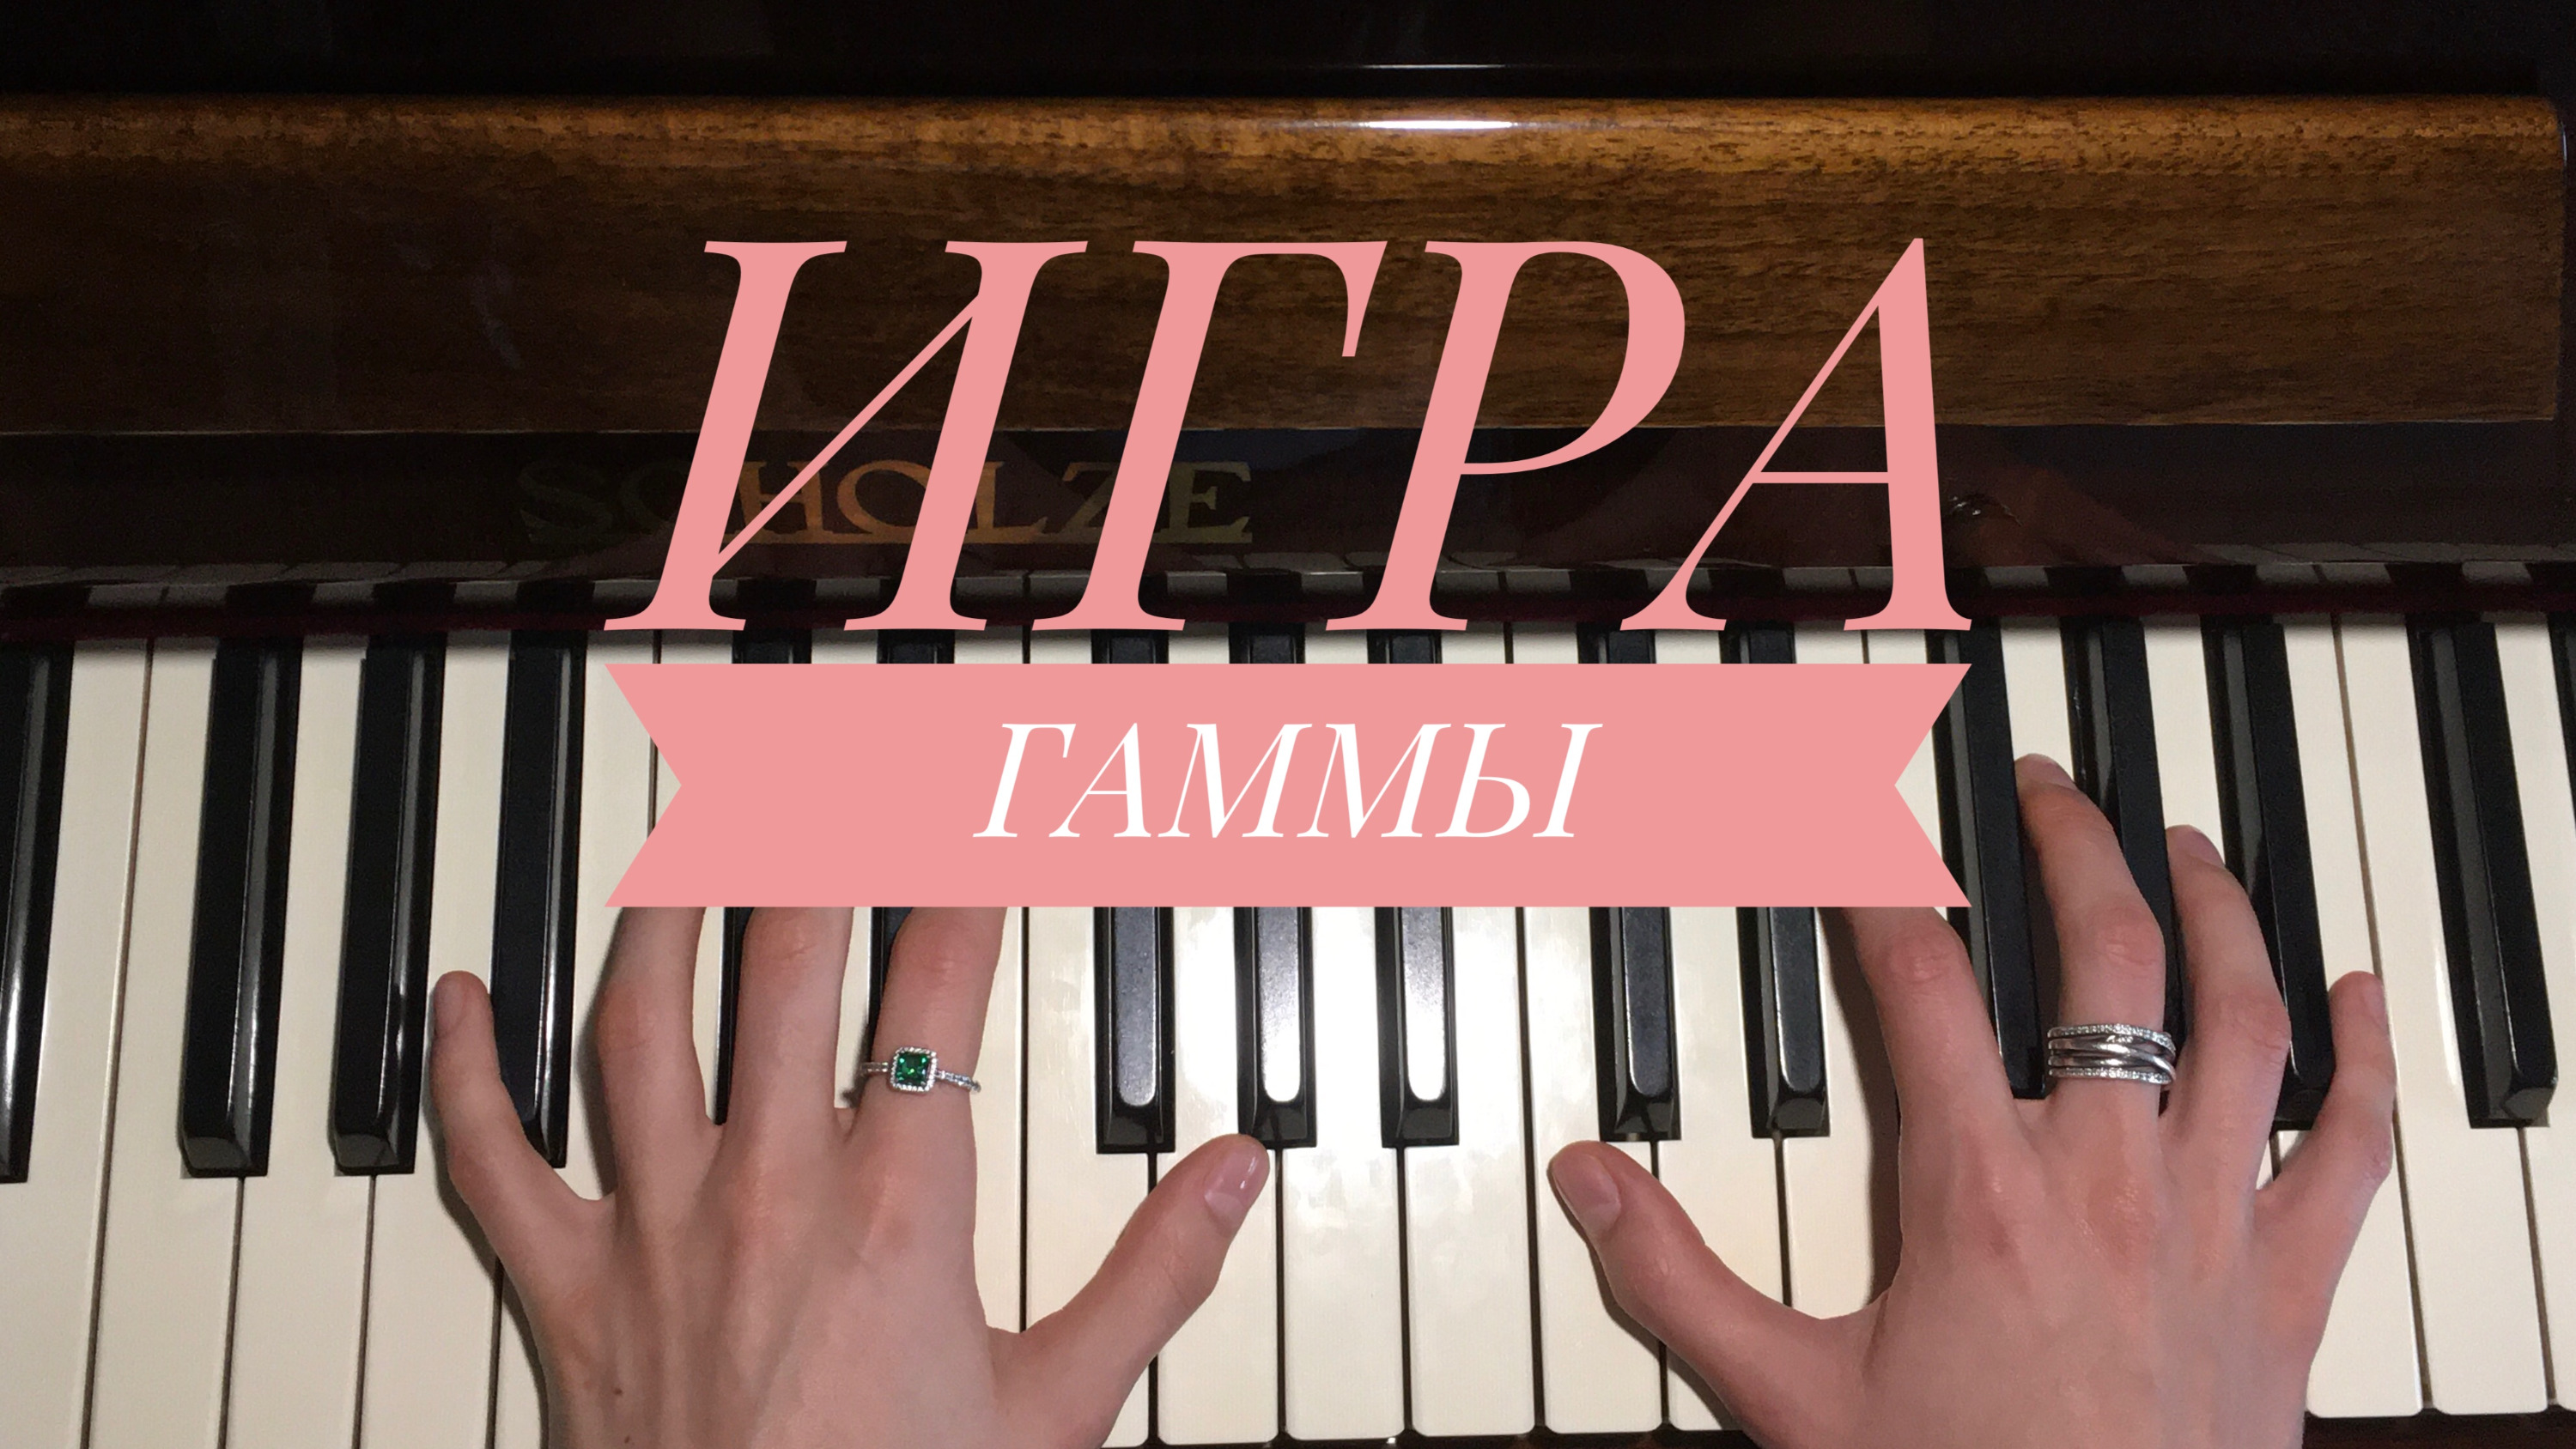 Для мамы играю гаммы. Гаммы для пианино. Гаммы для фортепиано. Гамма пианино СССР. Как играть гаммы двумя руками на фортепиано.